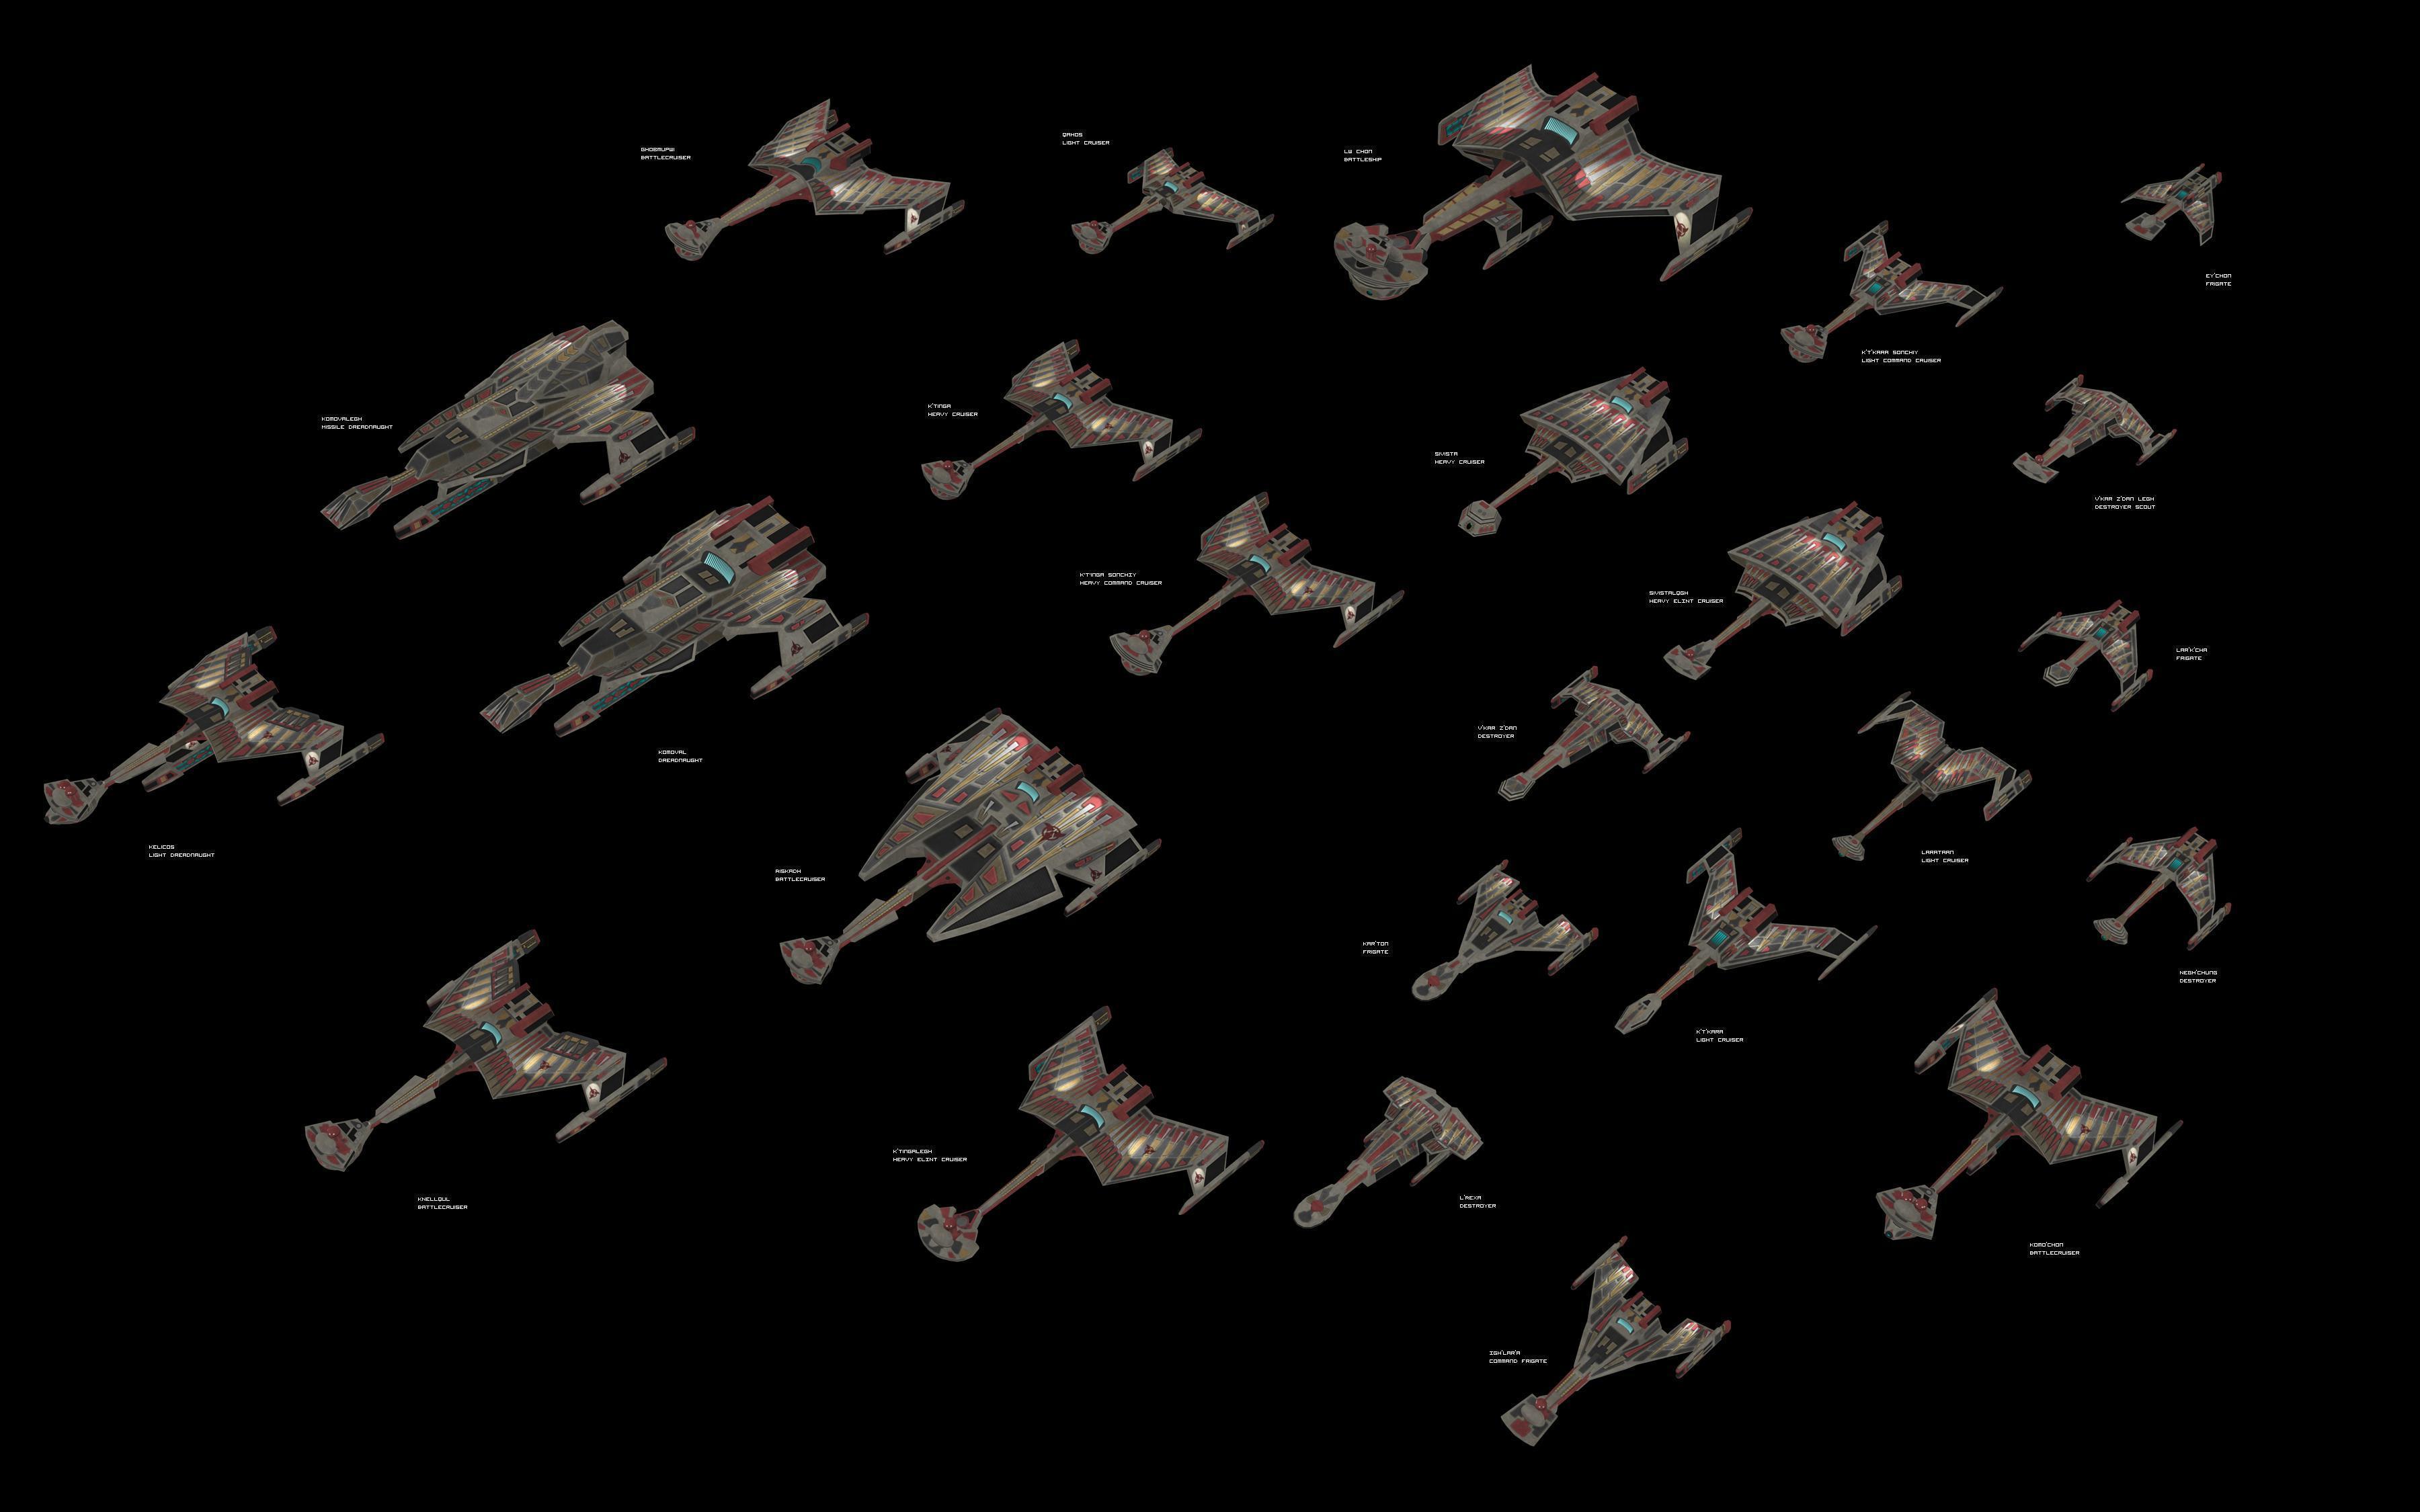 More Like Klingon Fleet